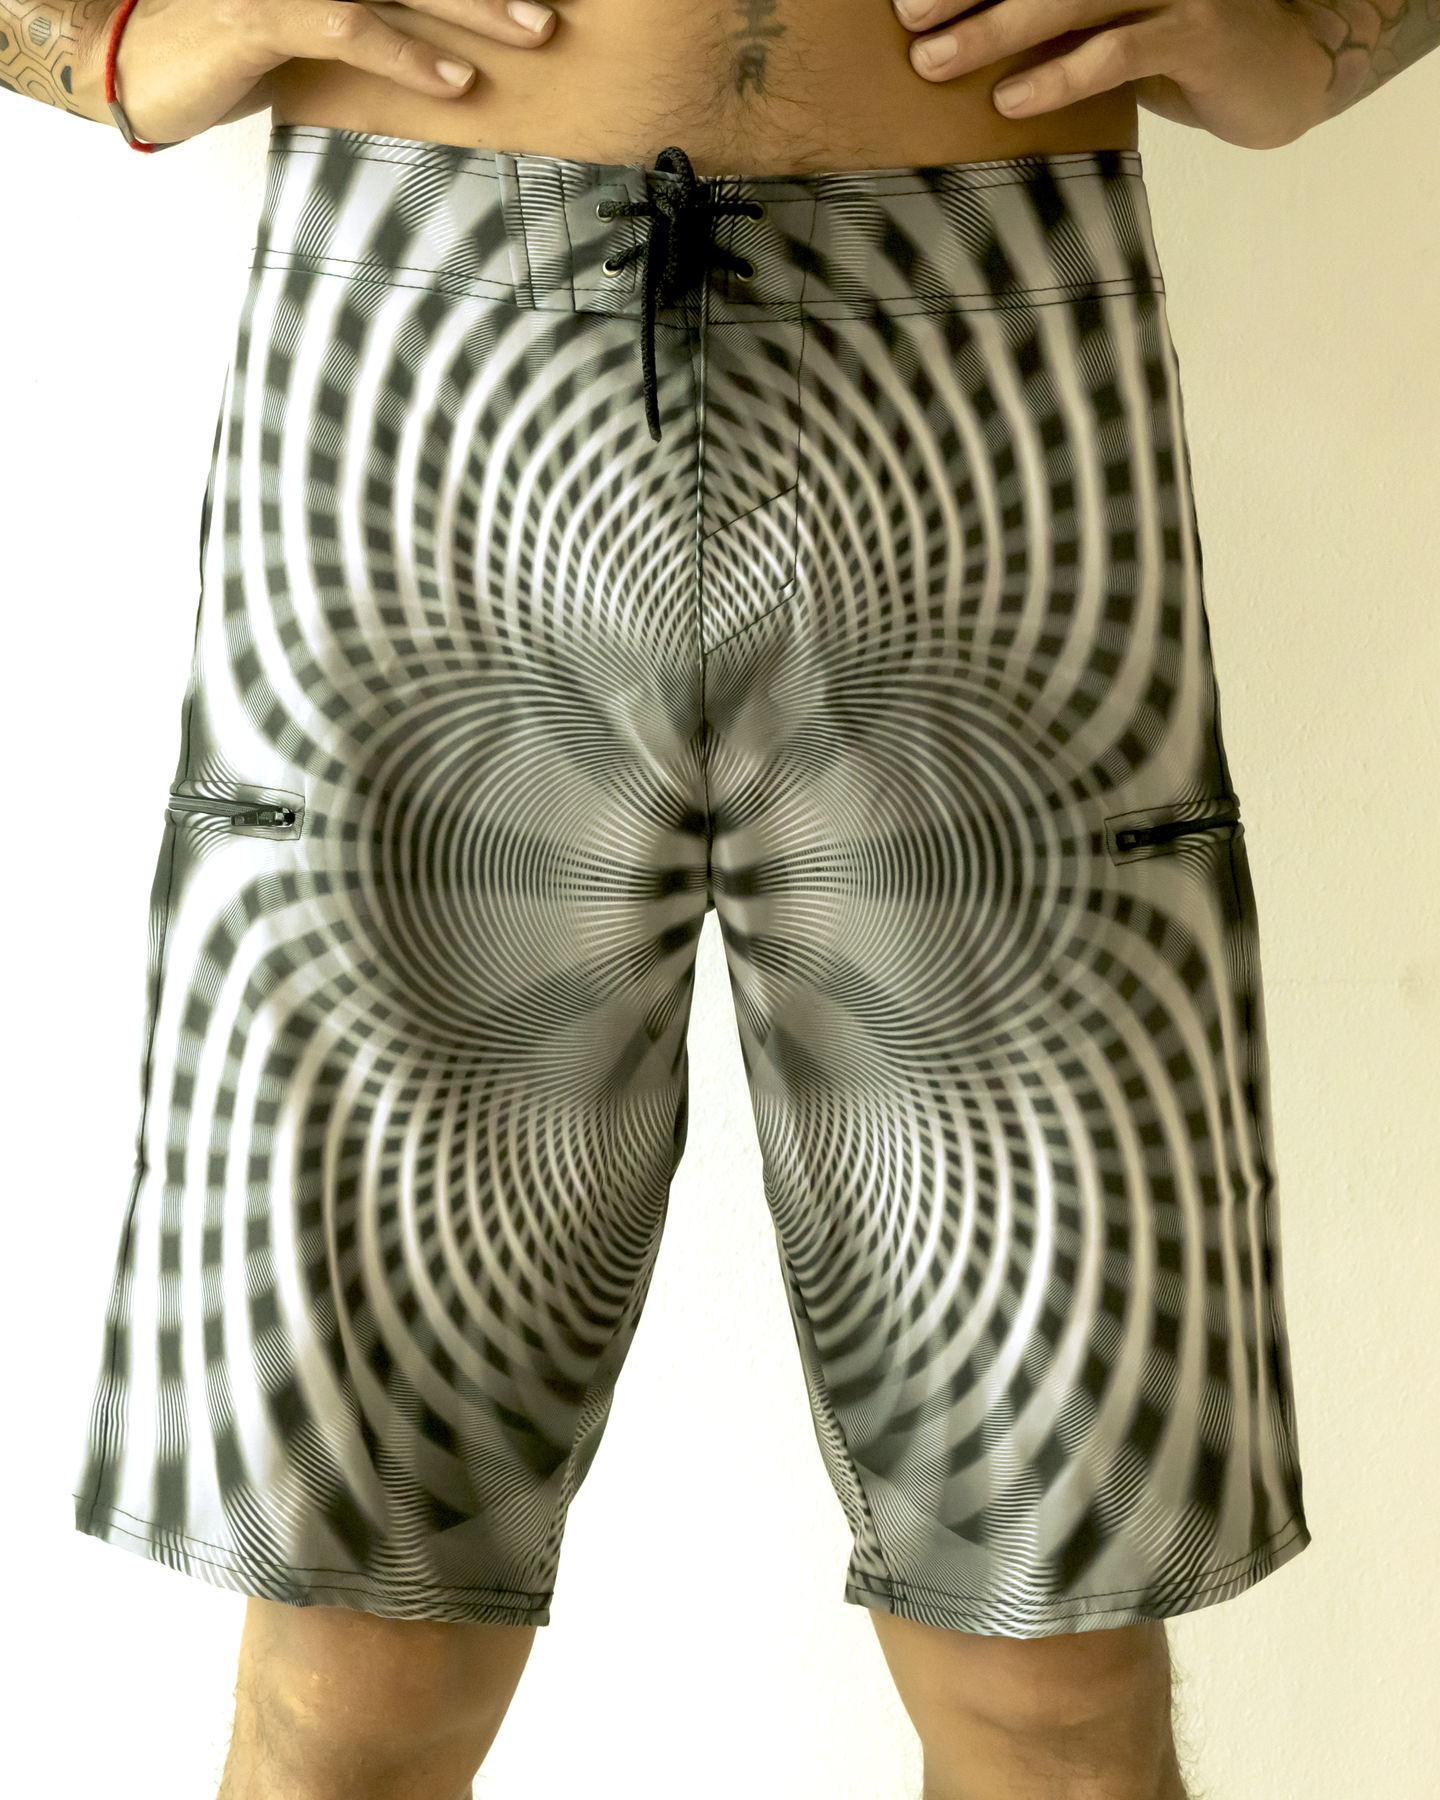 Flow board shorts